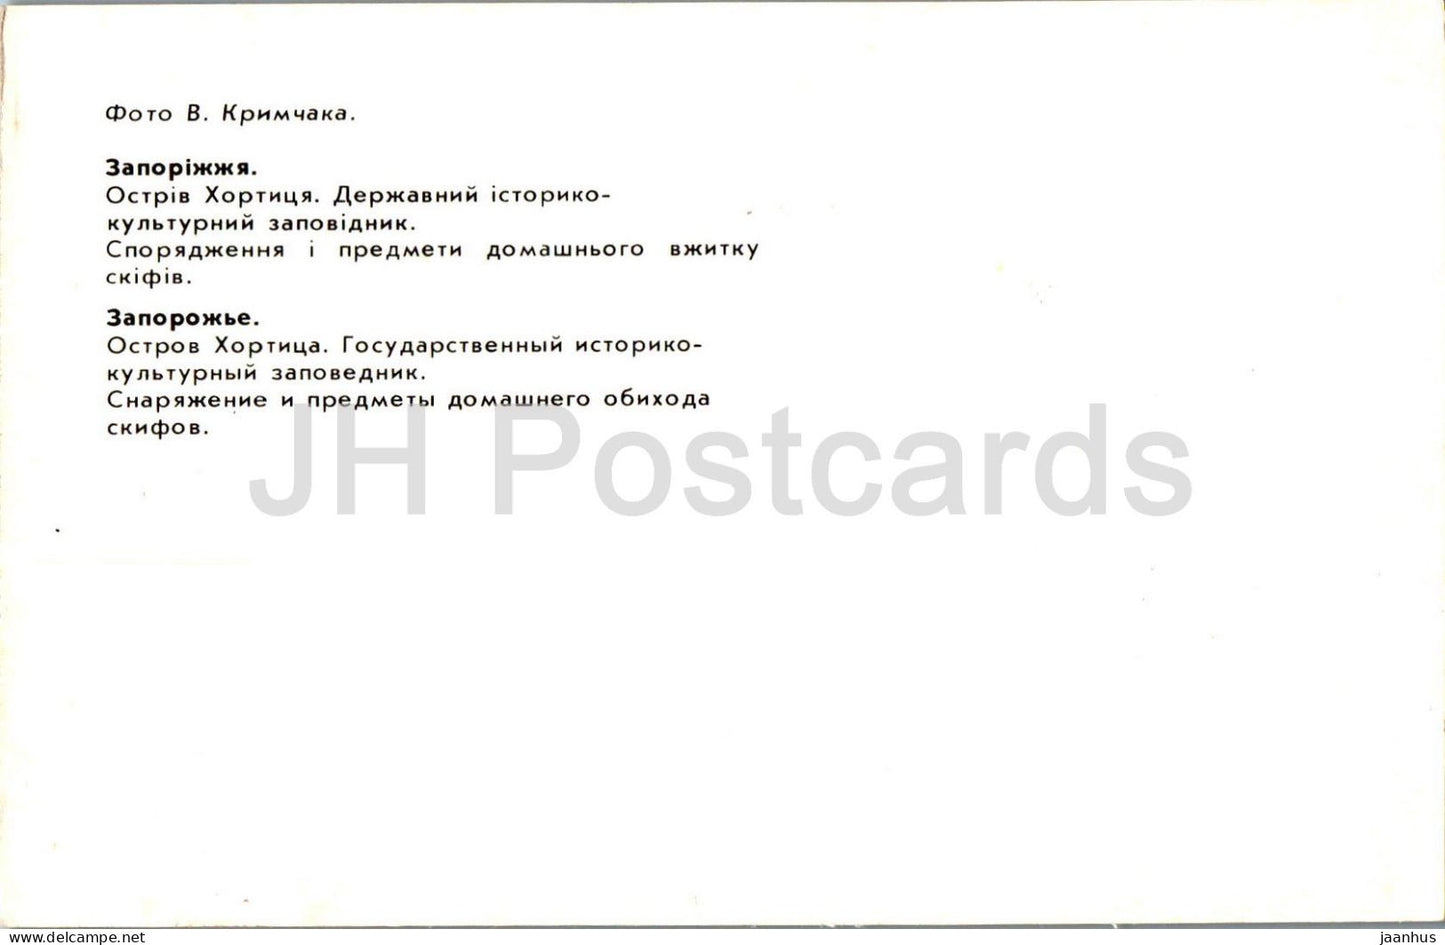 Île de Khortytsia - Équipement et articles ménagers scythes - Zaporizhzhia - 1985 - Ukraine URSS - inutilisé 